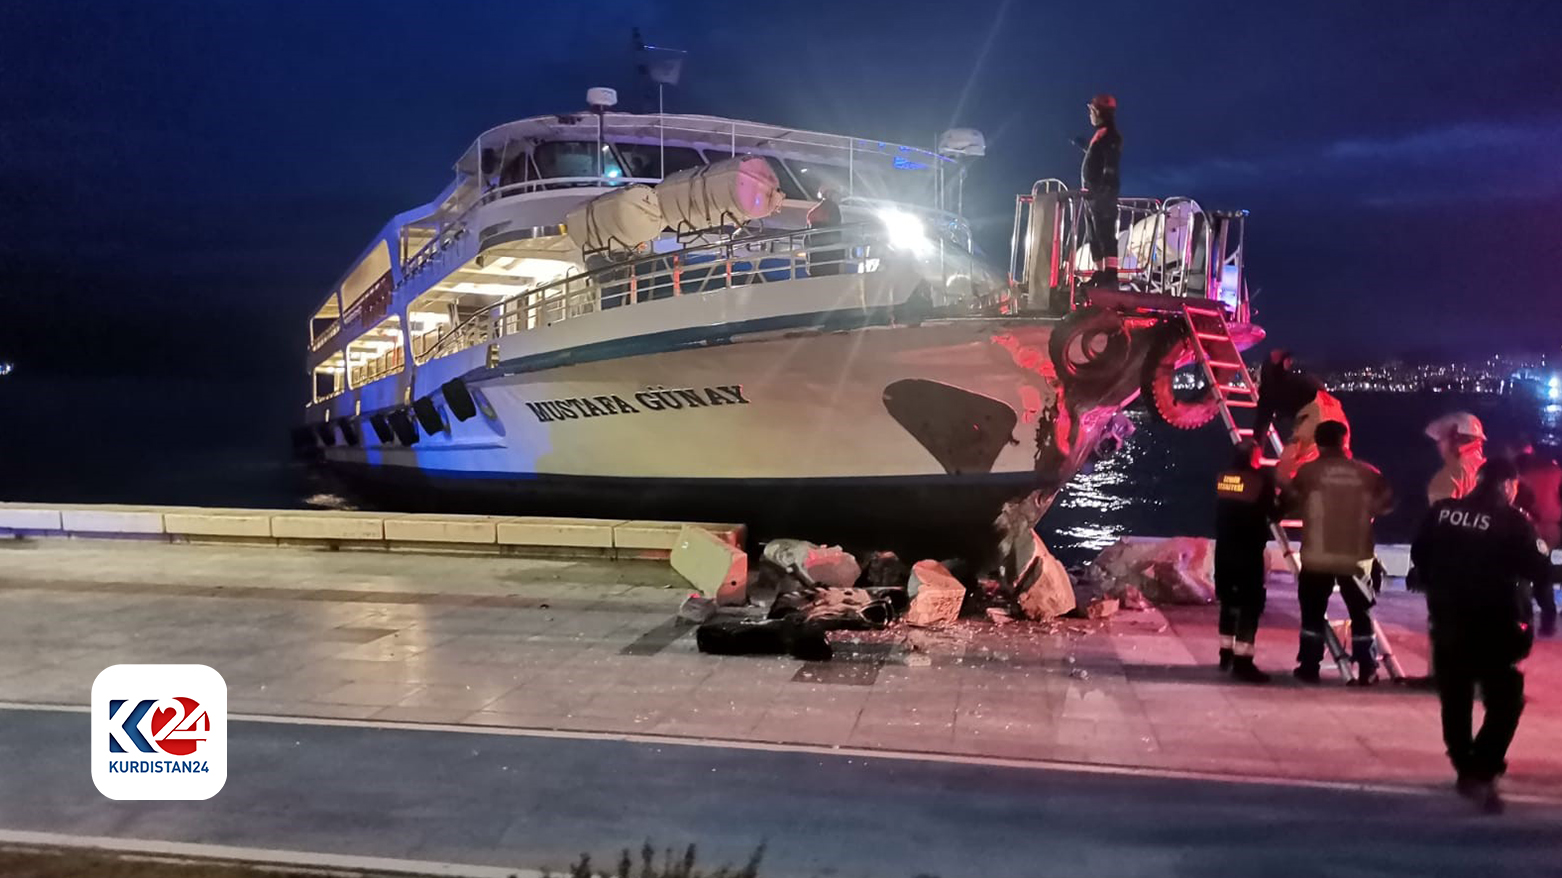 İzmir'de yolcu vapuru kaptanın rahatsızlanması sonucu karaya çarptı